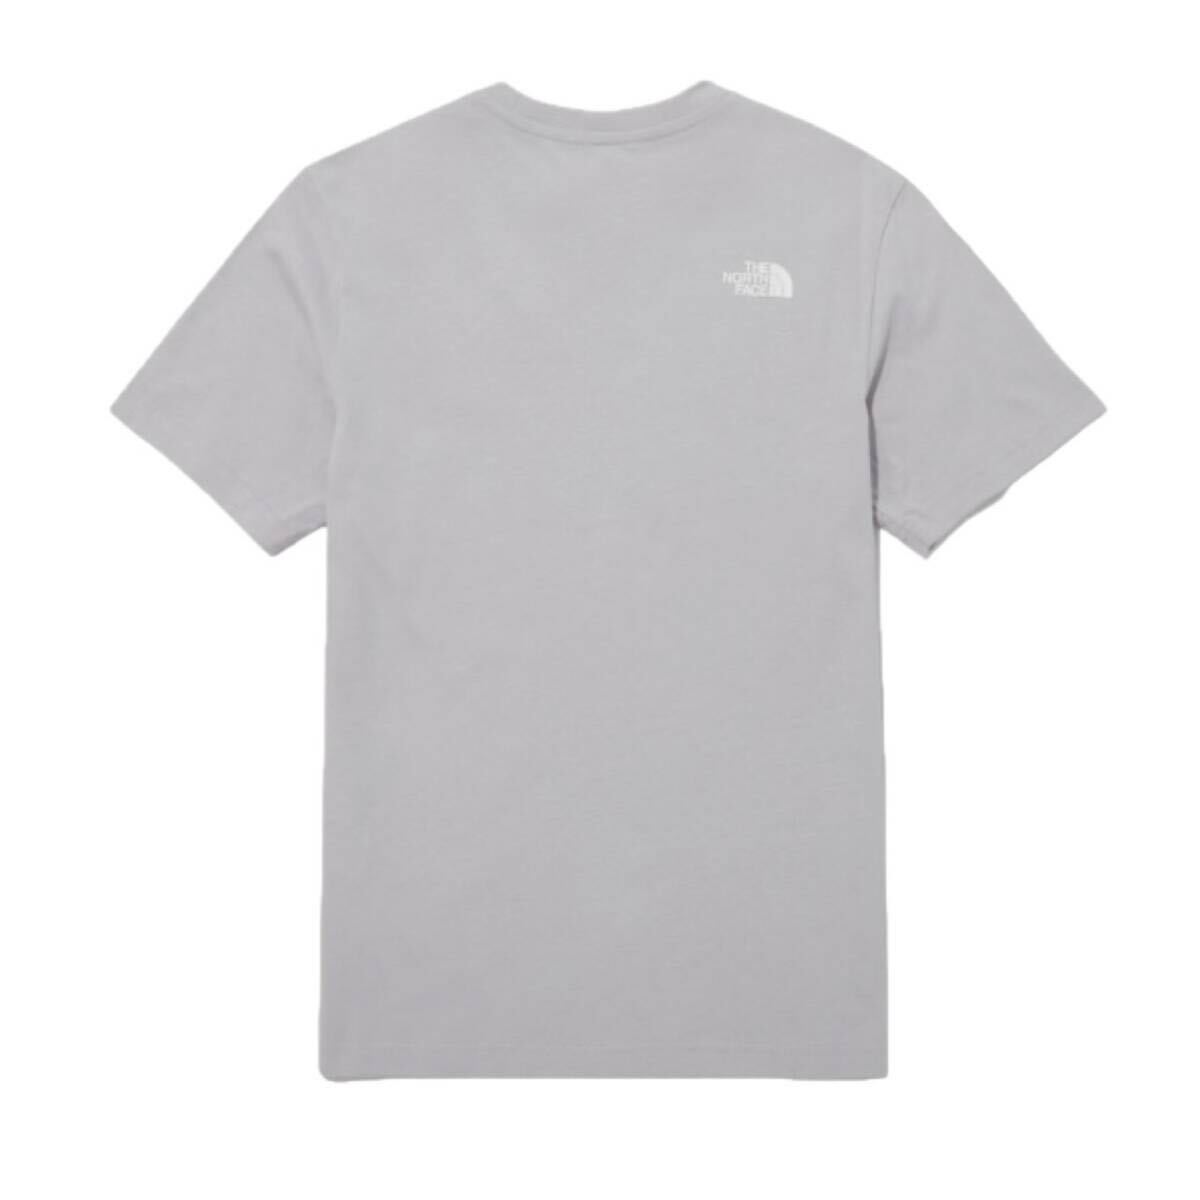 ザ ノースフェイス Tシャツ NT7U ライトグレー Mサイズ コットン素材 クルーネック シンプルロゴ THE NORTH FACE COTTON S/S TEE 新品の画像5